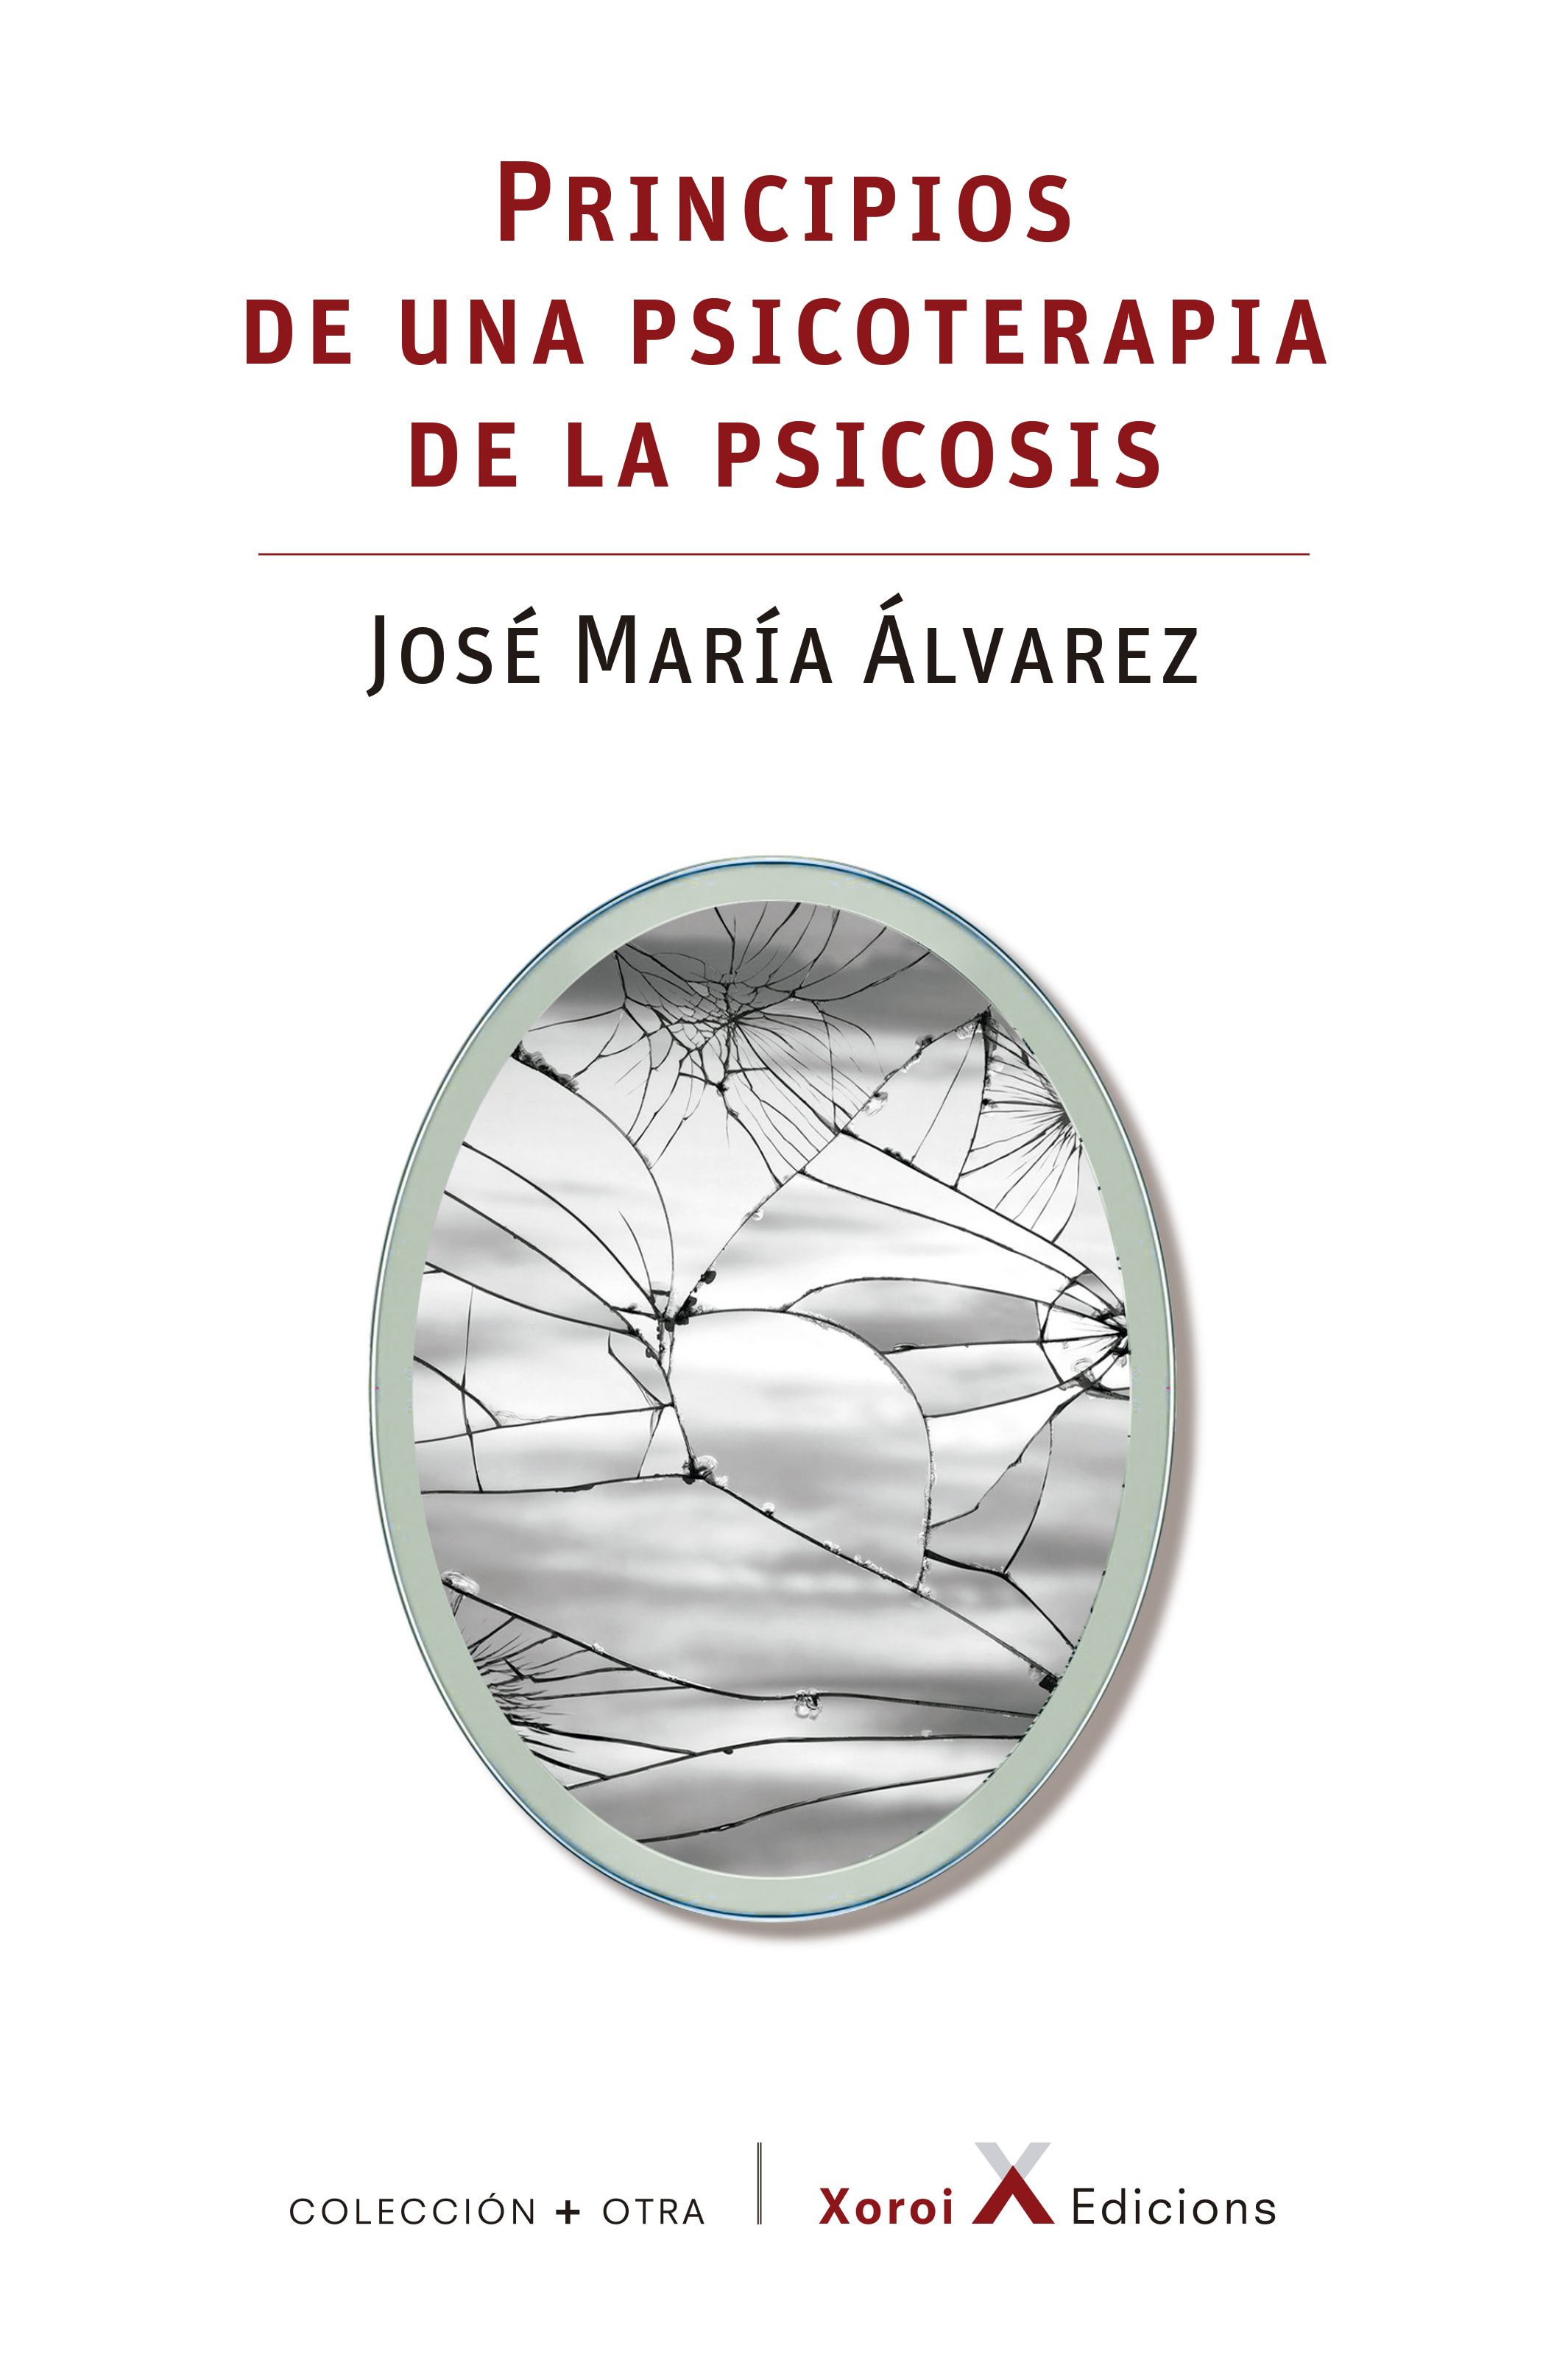 José María Álvarez: Principios de una psicoterapia de la psicosis